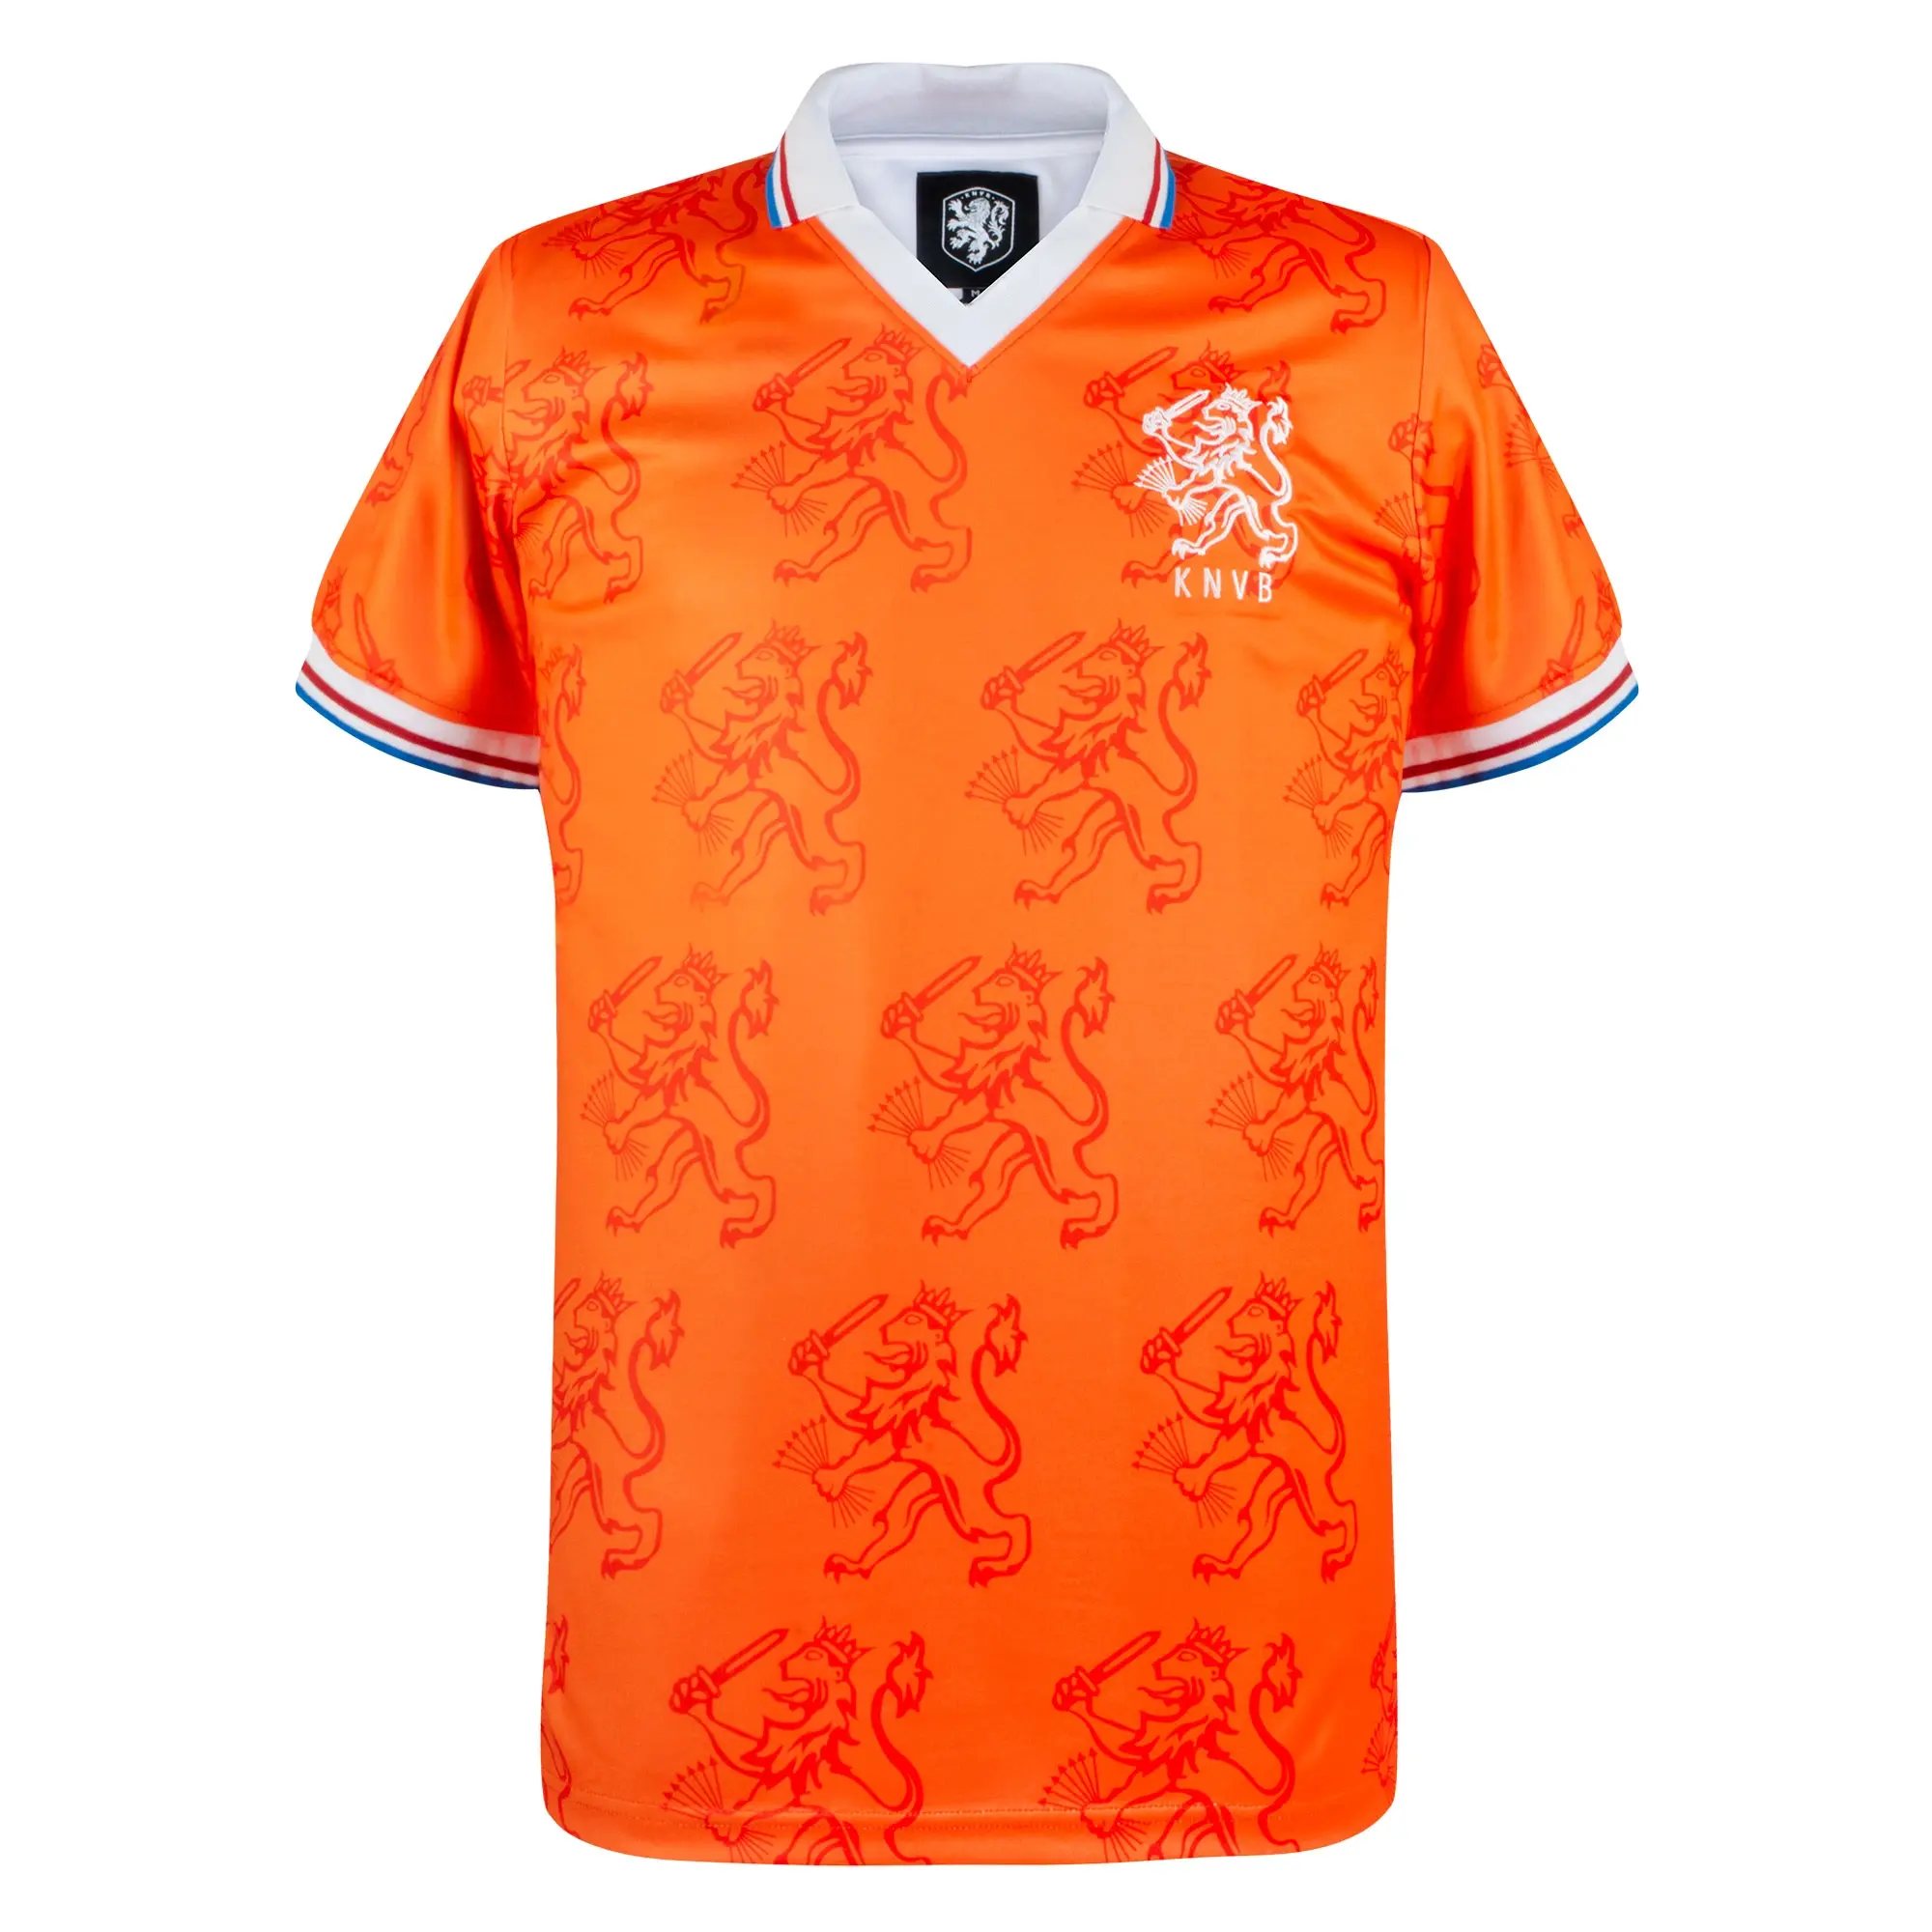 Score Draw Netherlands Mens SS Home Shirt 1994